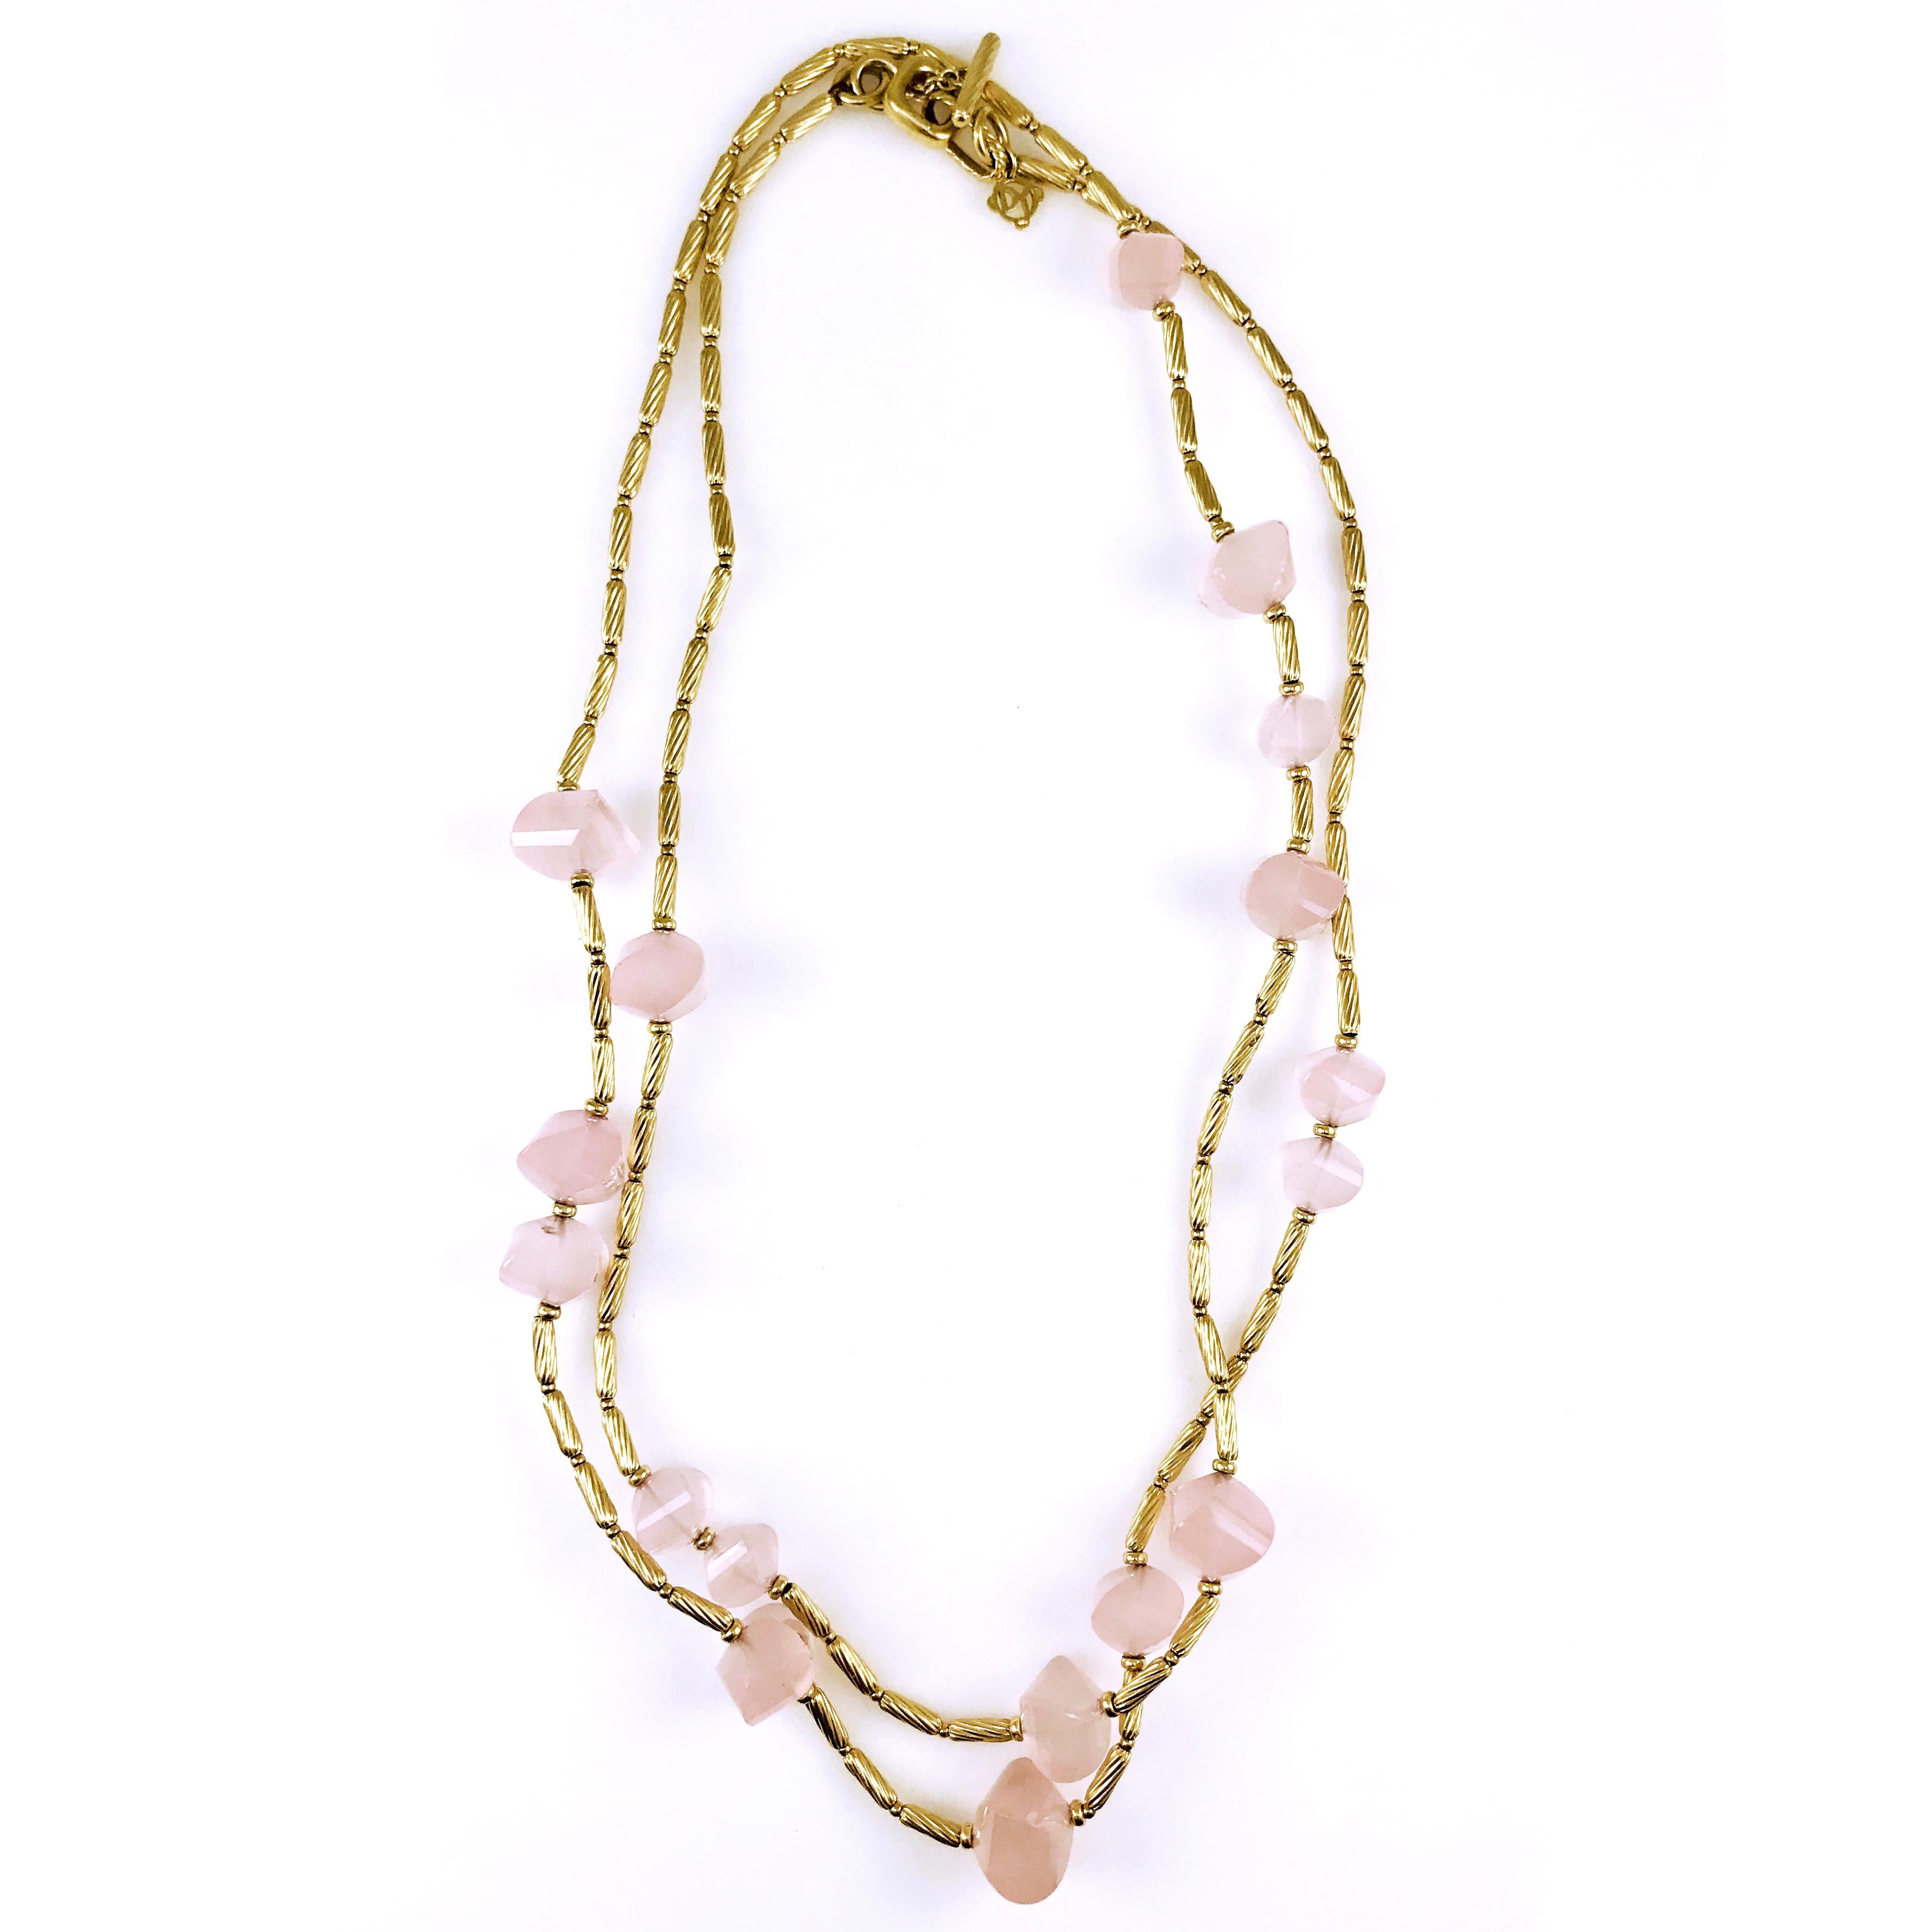 David Yurman Halskette aus 18 Karat Gelbgold und Rosenquarz. Die Designer-Halskette besteht aus einem röhrenförmigen, gedrehten Kabel und runden Perlen sowie Rosenquarzperlen. Die Länge der Halskette beträgt 44'' und sie hat einen Knebelverschluss.